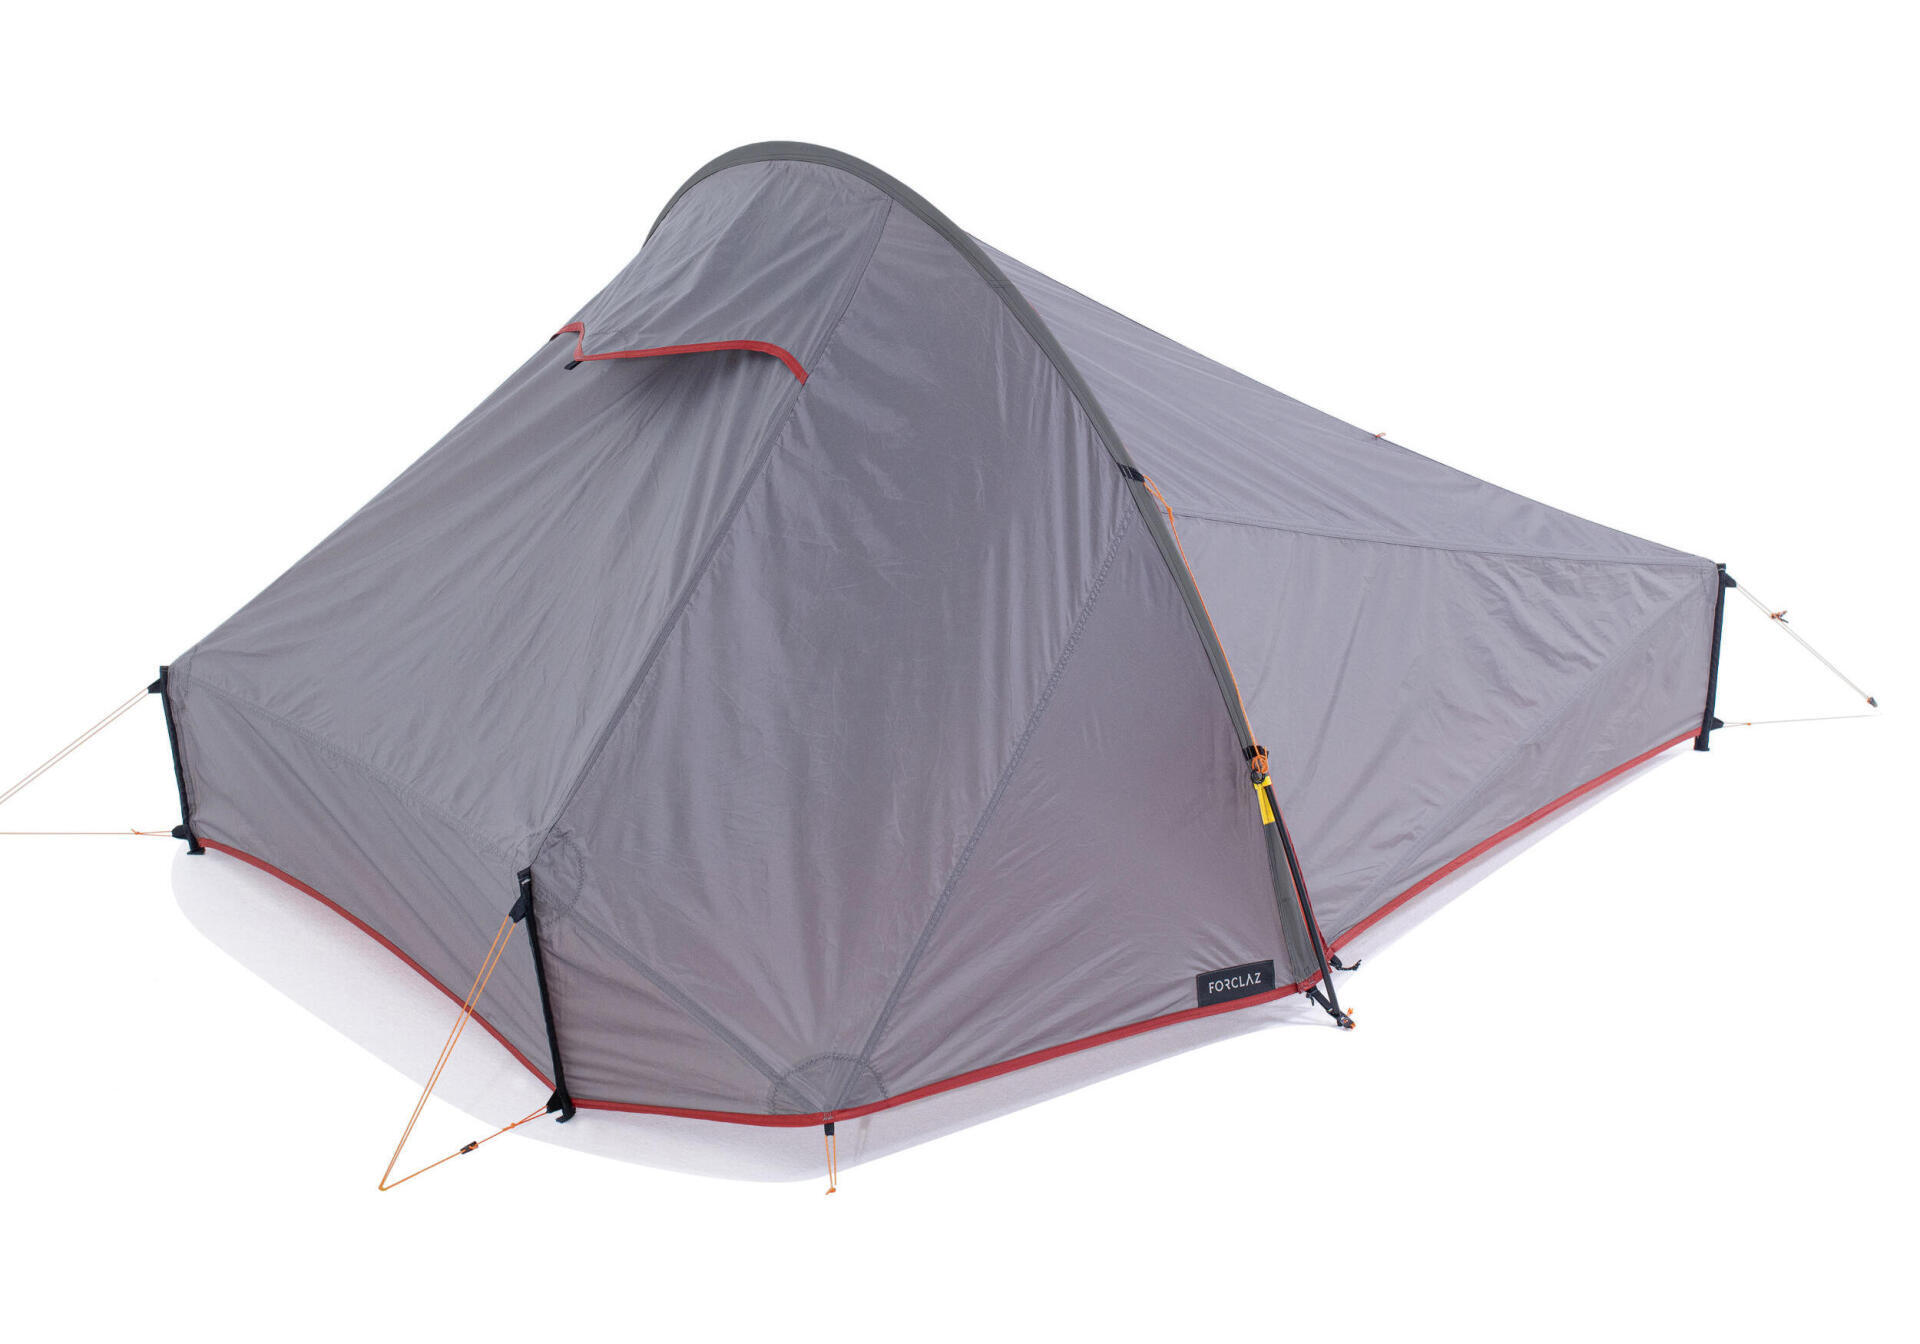 How do you choose a bivouac tent?